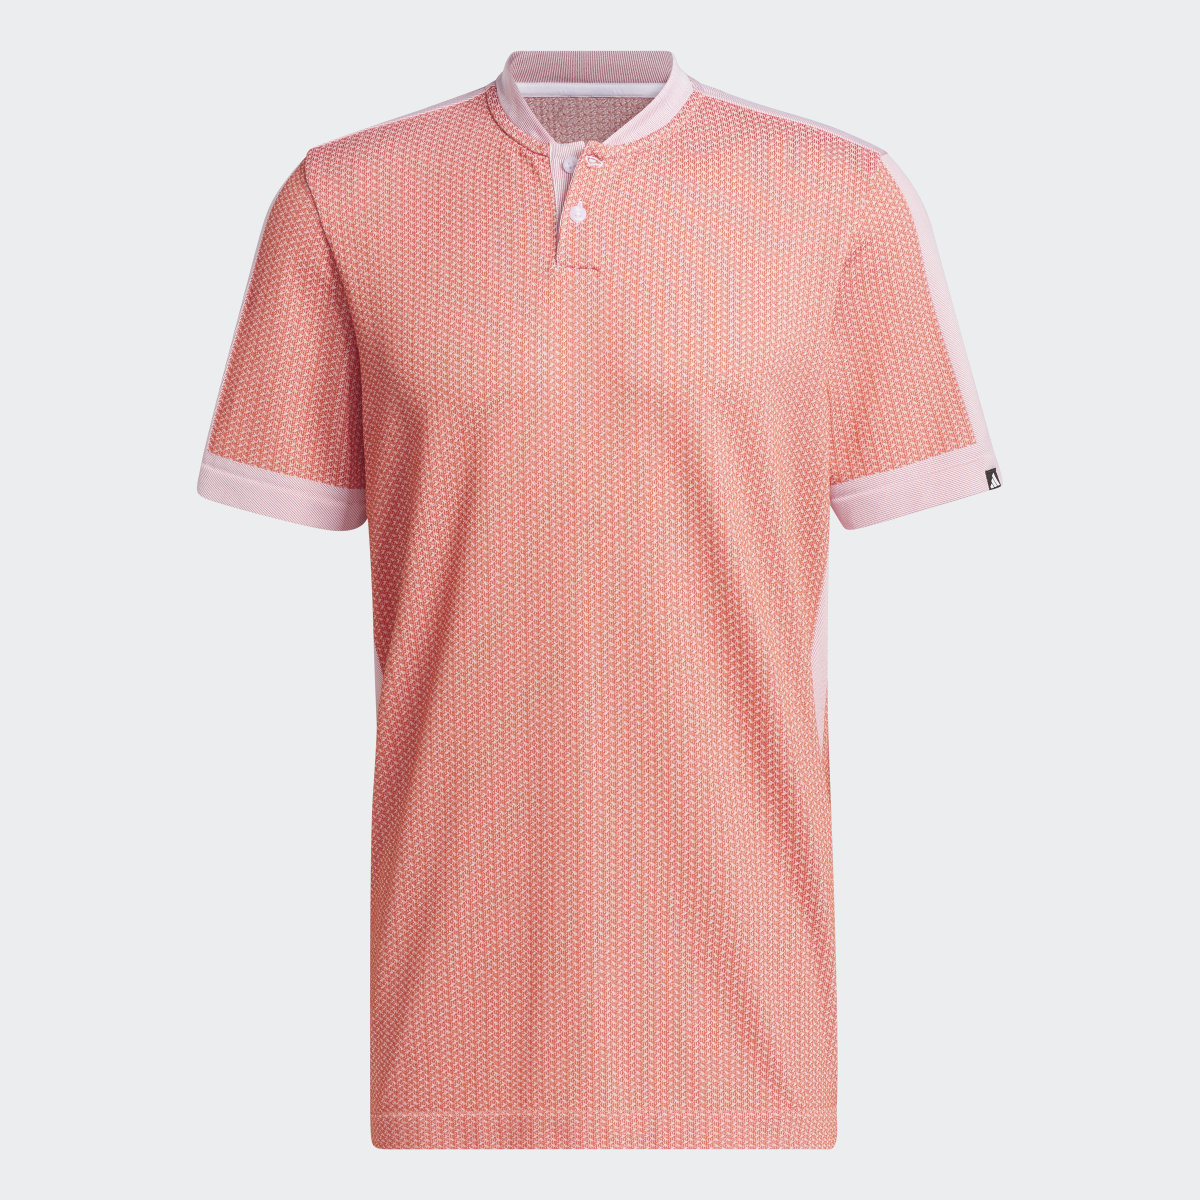 Adidas Ultimate365 Tour Textured PRIMEKNIT Golf Poloshirt. 5